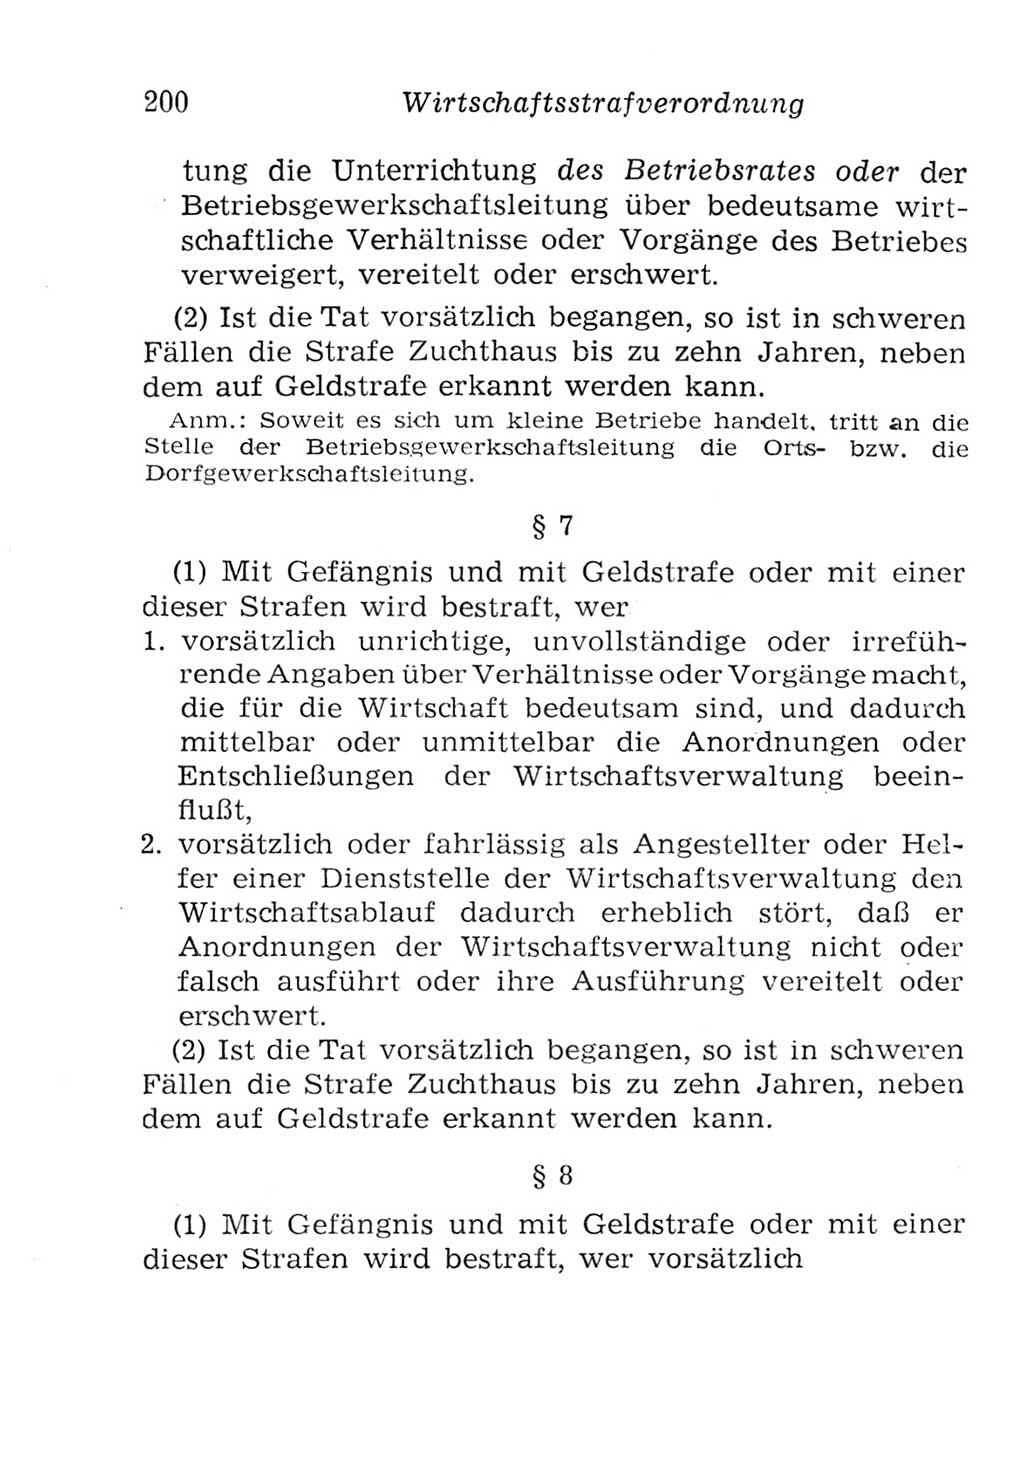 Strafgesetzbuch (StGB) und andere Strafgesetze [Deutsche Demokratische Republik (DDR)] 1957, Seite 200 (StGB Strafges. DDR 1957, S. 200)